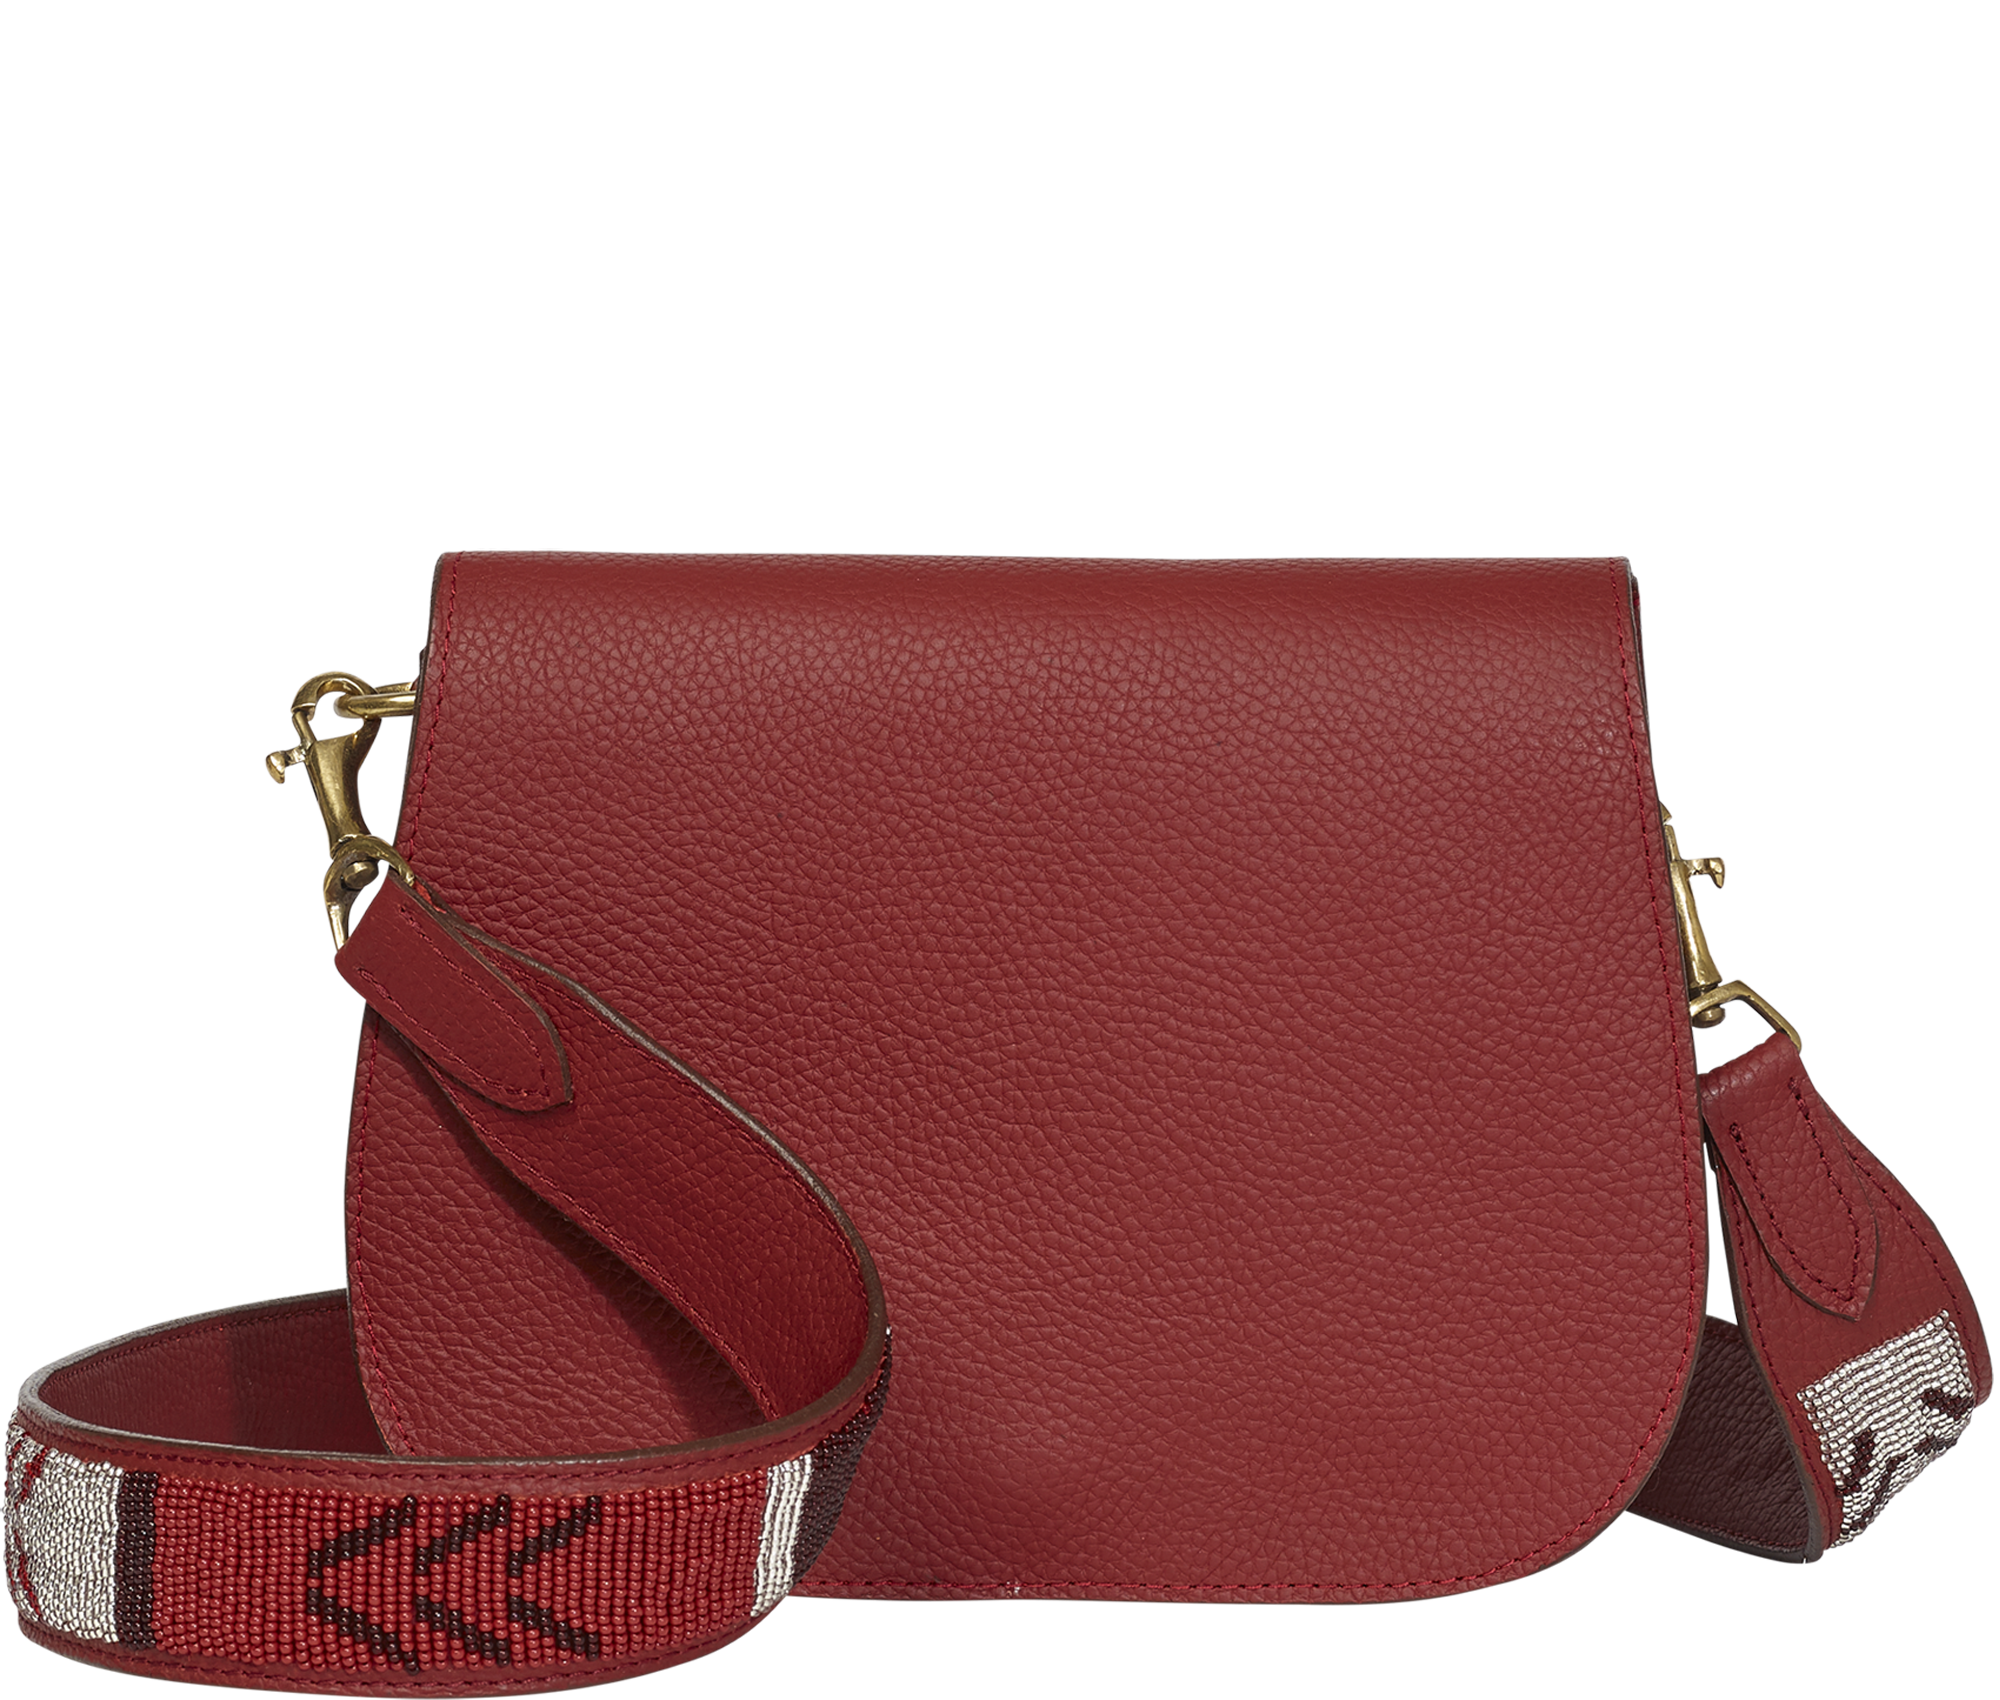 Handbag Red Beaded Strap Crossbody Bag